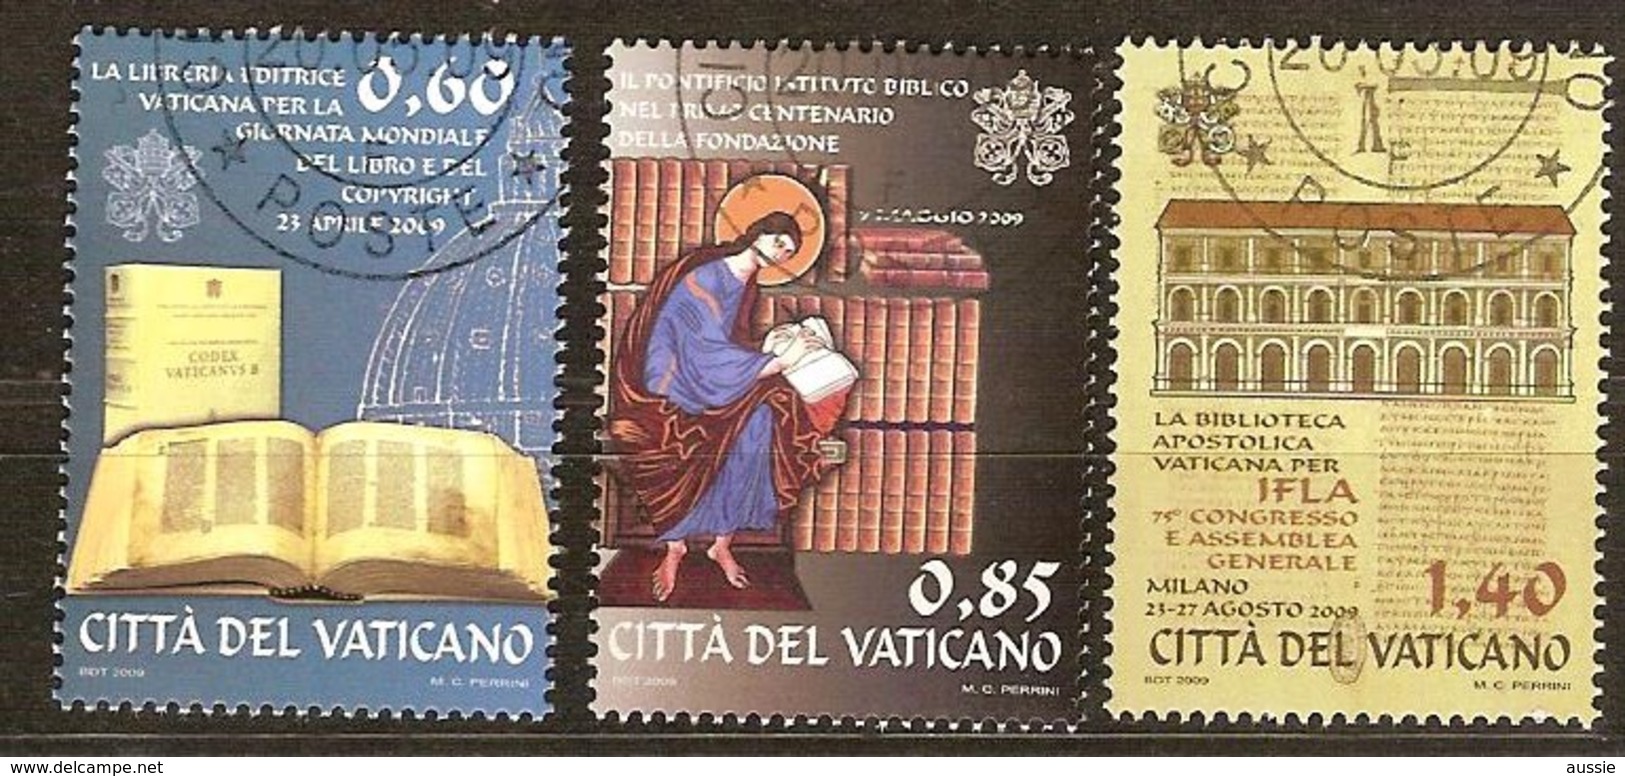 Vatican Vatikaanstad 2009 Yvertn° 1495-1497 (°) Oblitéré Used Cote 8,50 Euro - Oblitérés